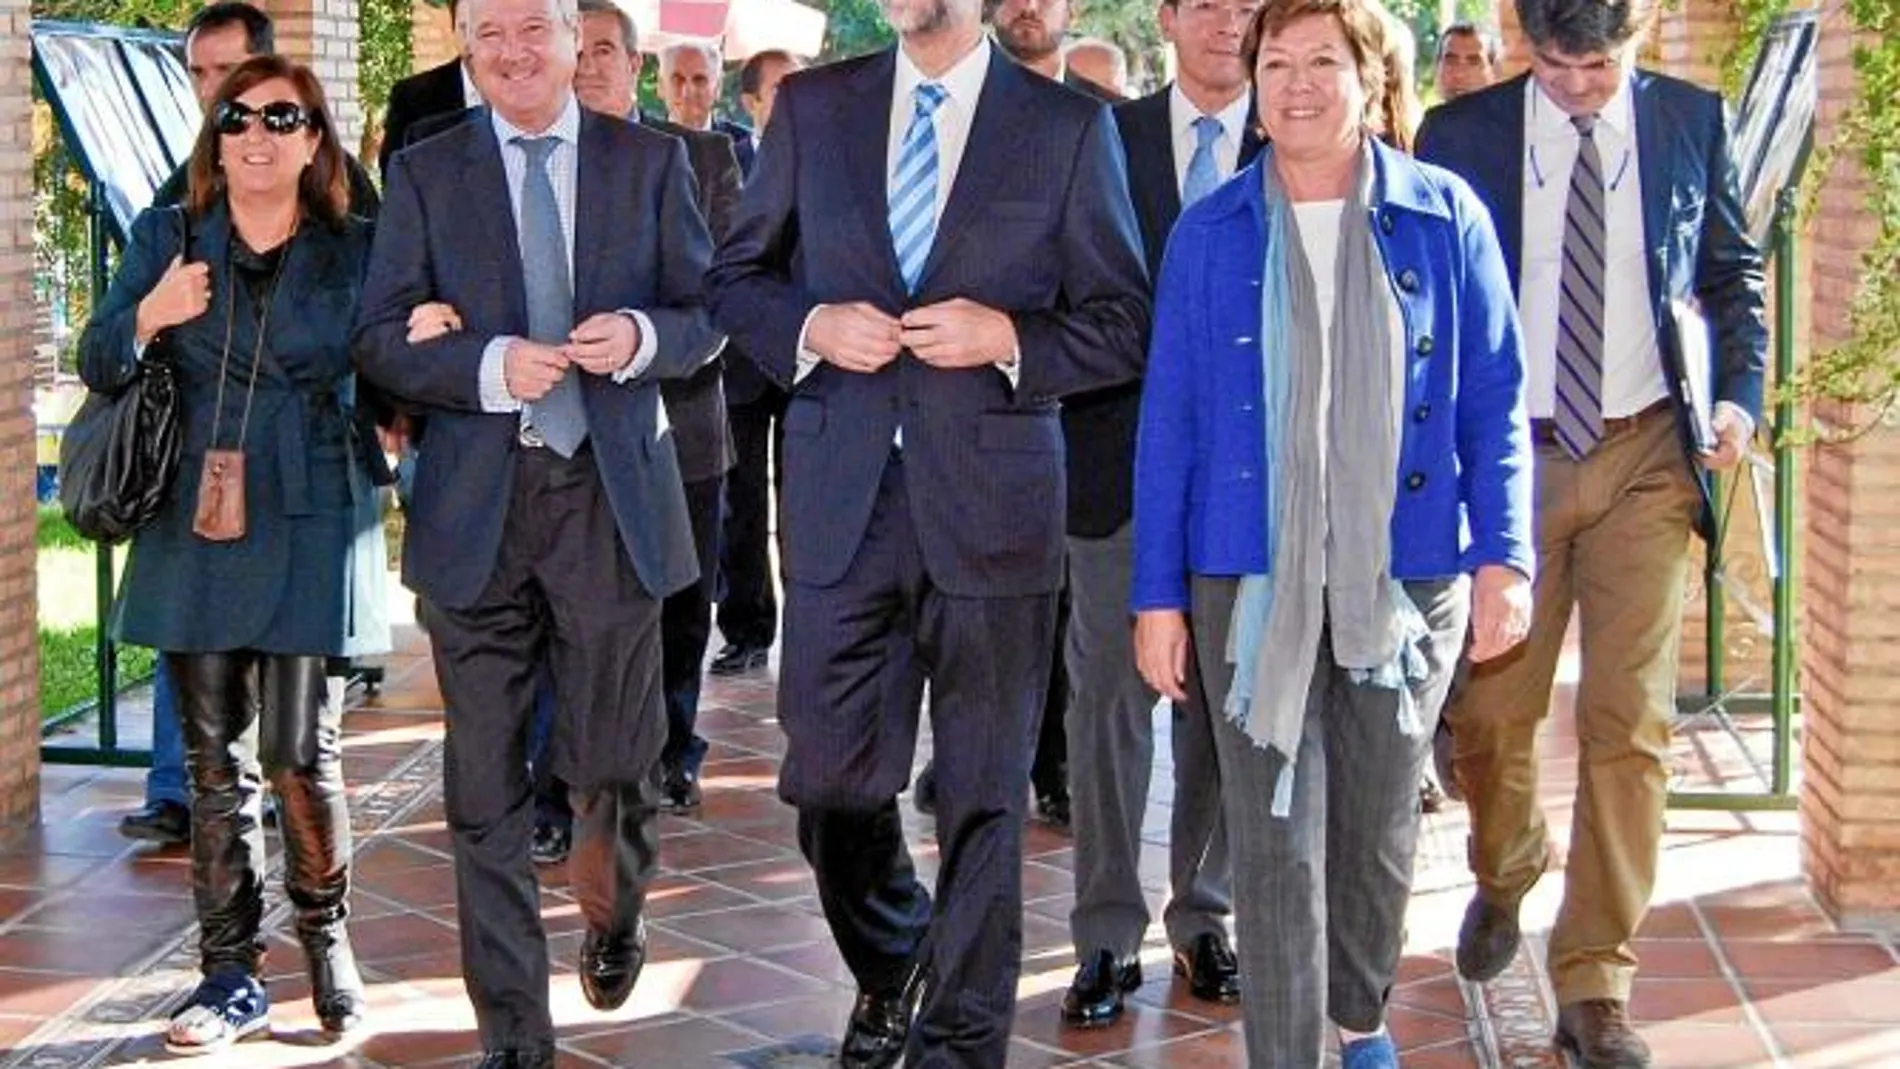 Rajoy confirma que habrá un Ministerio RECEPCIÓN. El candidato del PP a La Moncloa llegó al mitin en Murcia franqueado por Valcárcel y BarreiroAgricultura